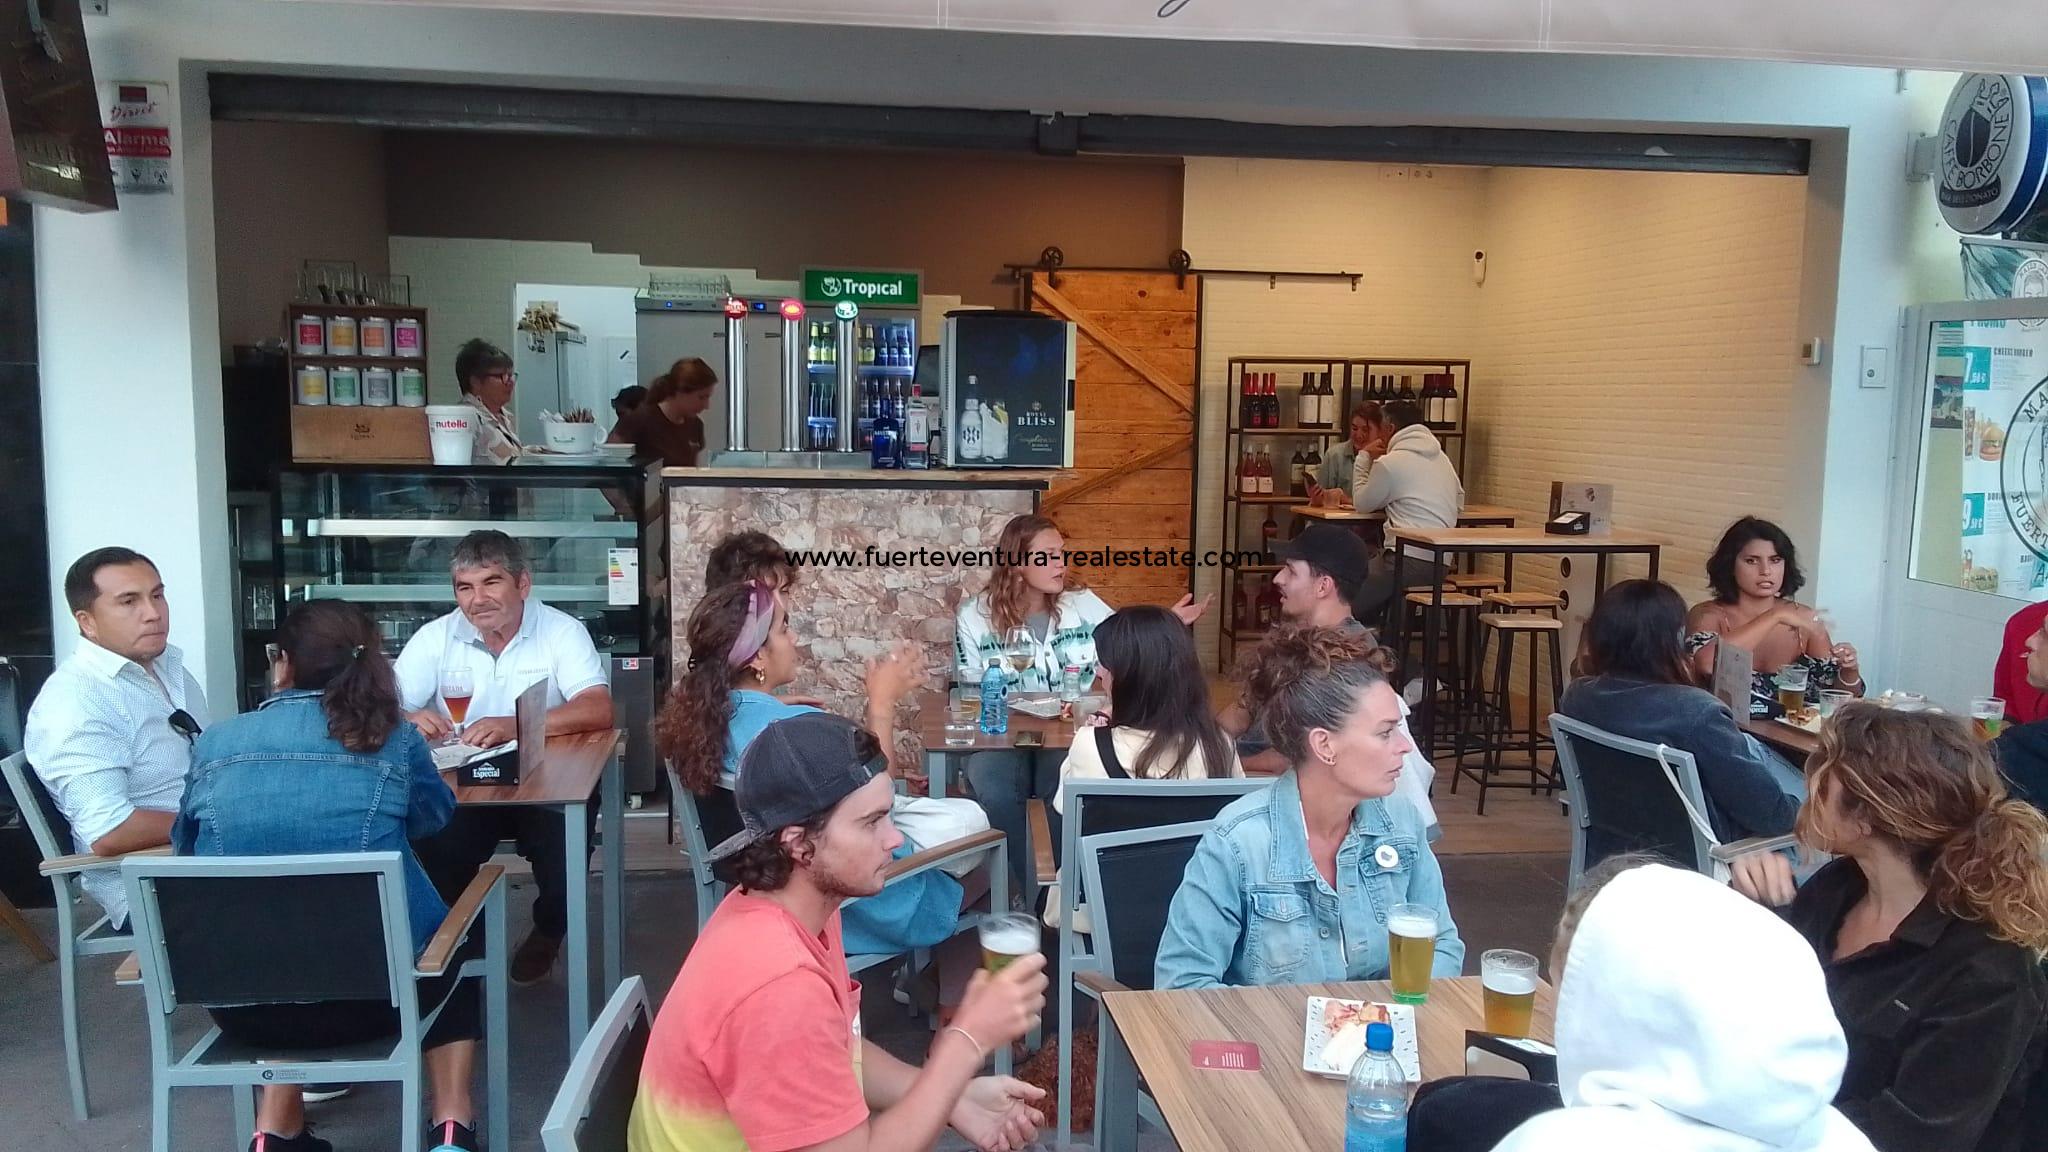  Eine Bar / Cafeteria in der besten  kommerziellen Zone von Corralejo wird verpachtet